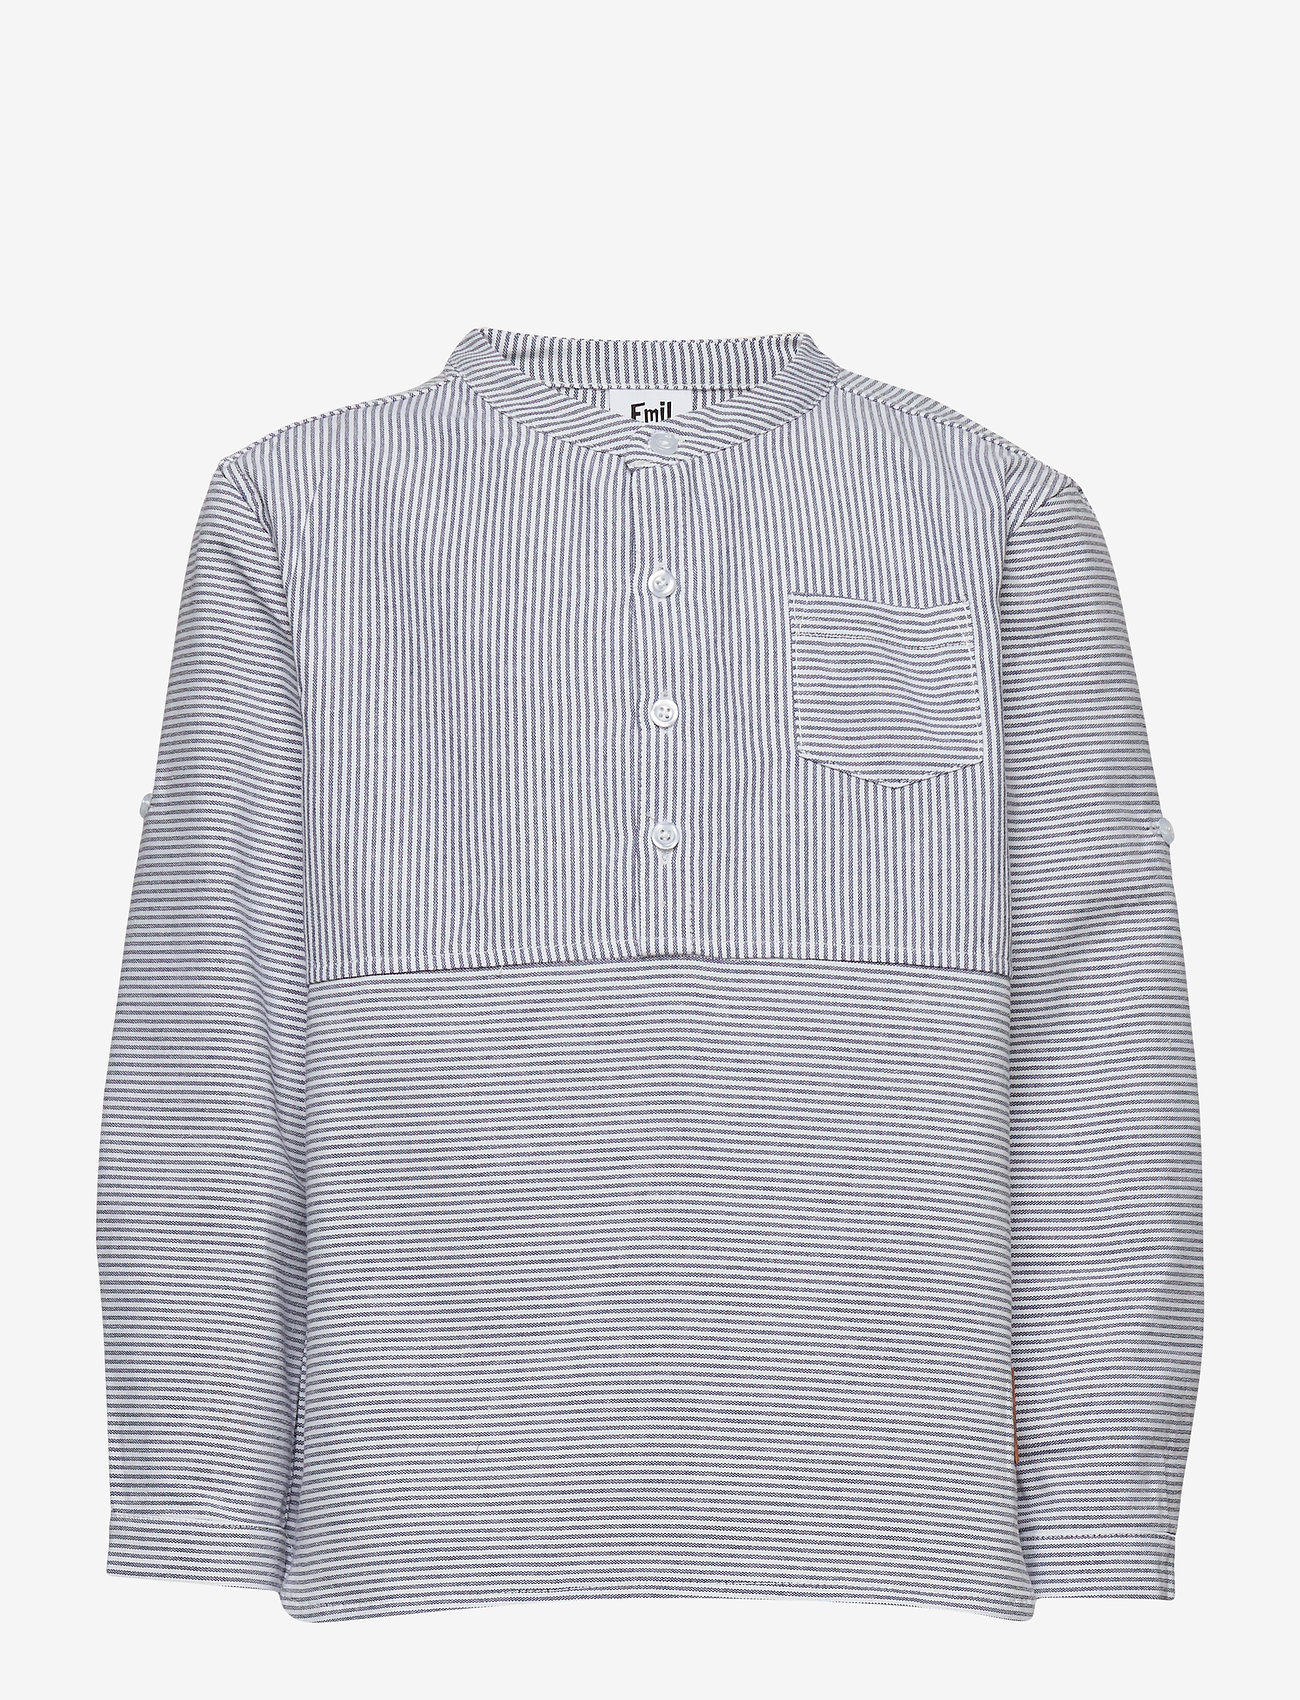 Martinex - EMIL BAND COLLAR SHIRT - langærmede skjorter - blue - 0